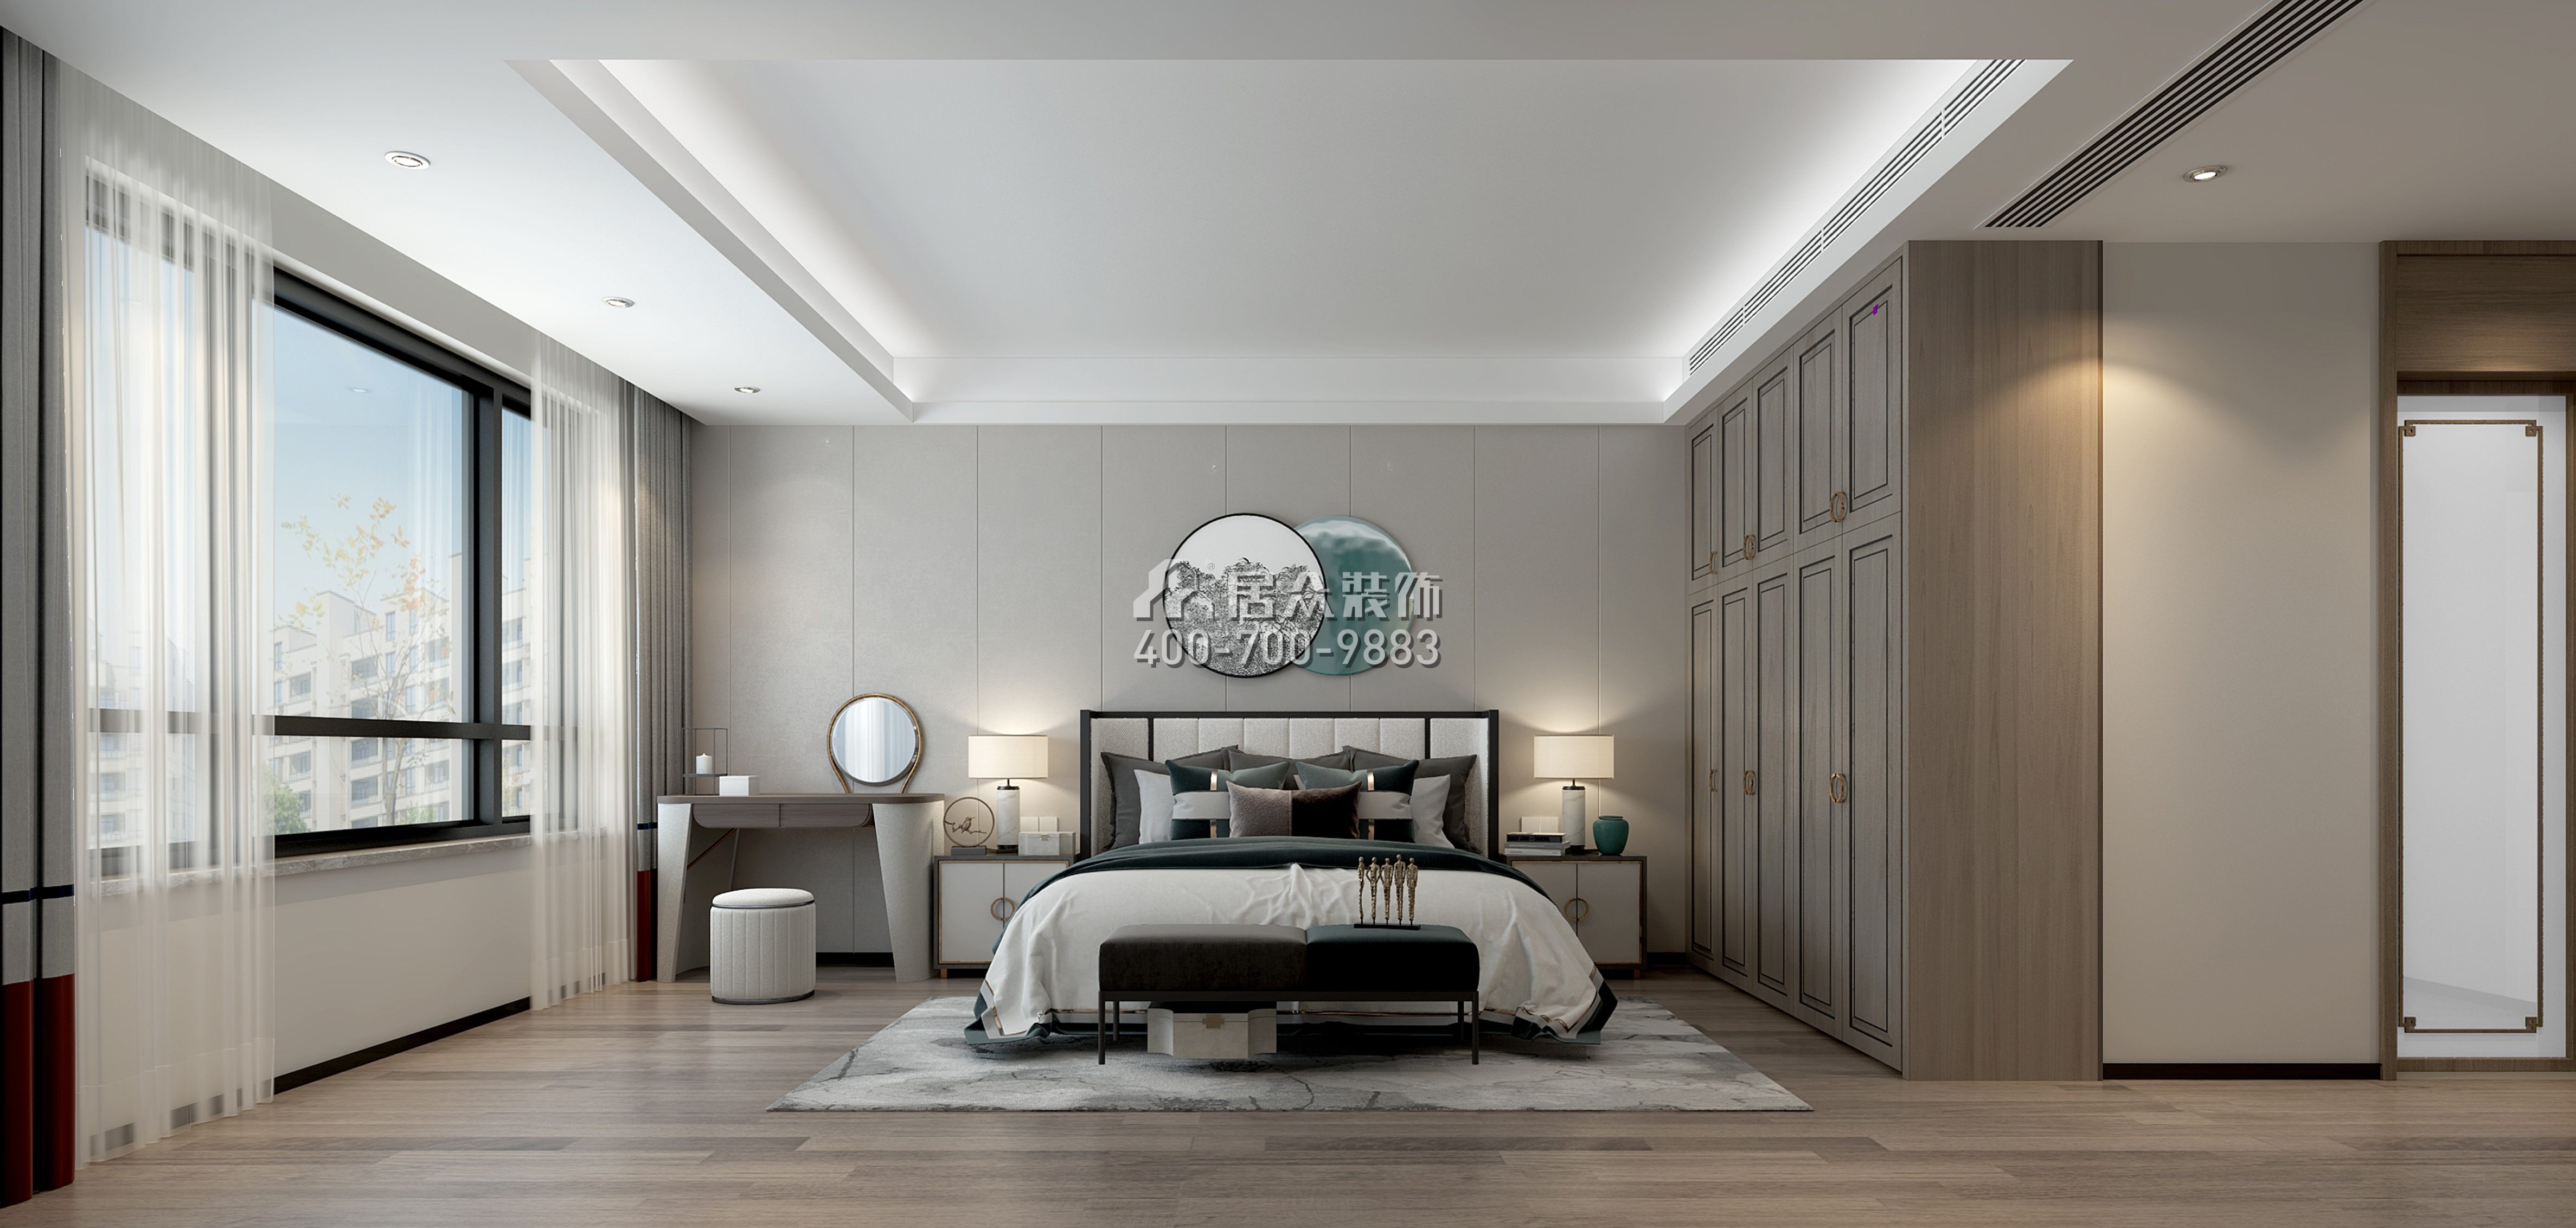 中泰财富湘江200平方米混搭风格平层户型卧室装修效果图